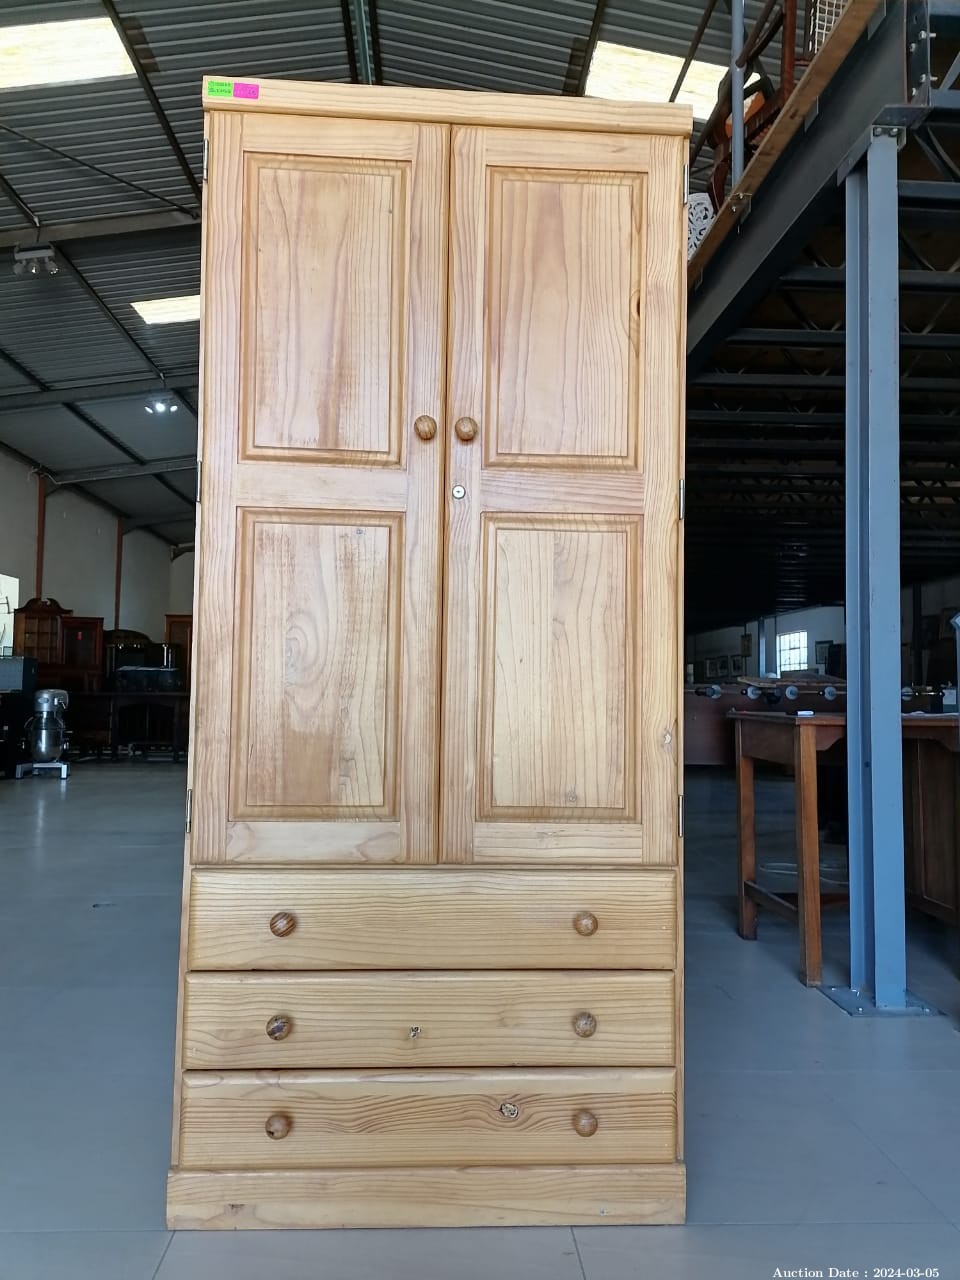 5681 - Lovely Solid Wood Double Door Wardrobe